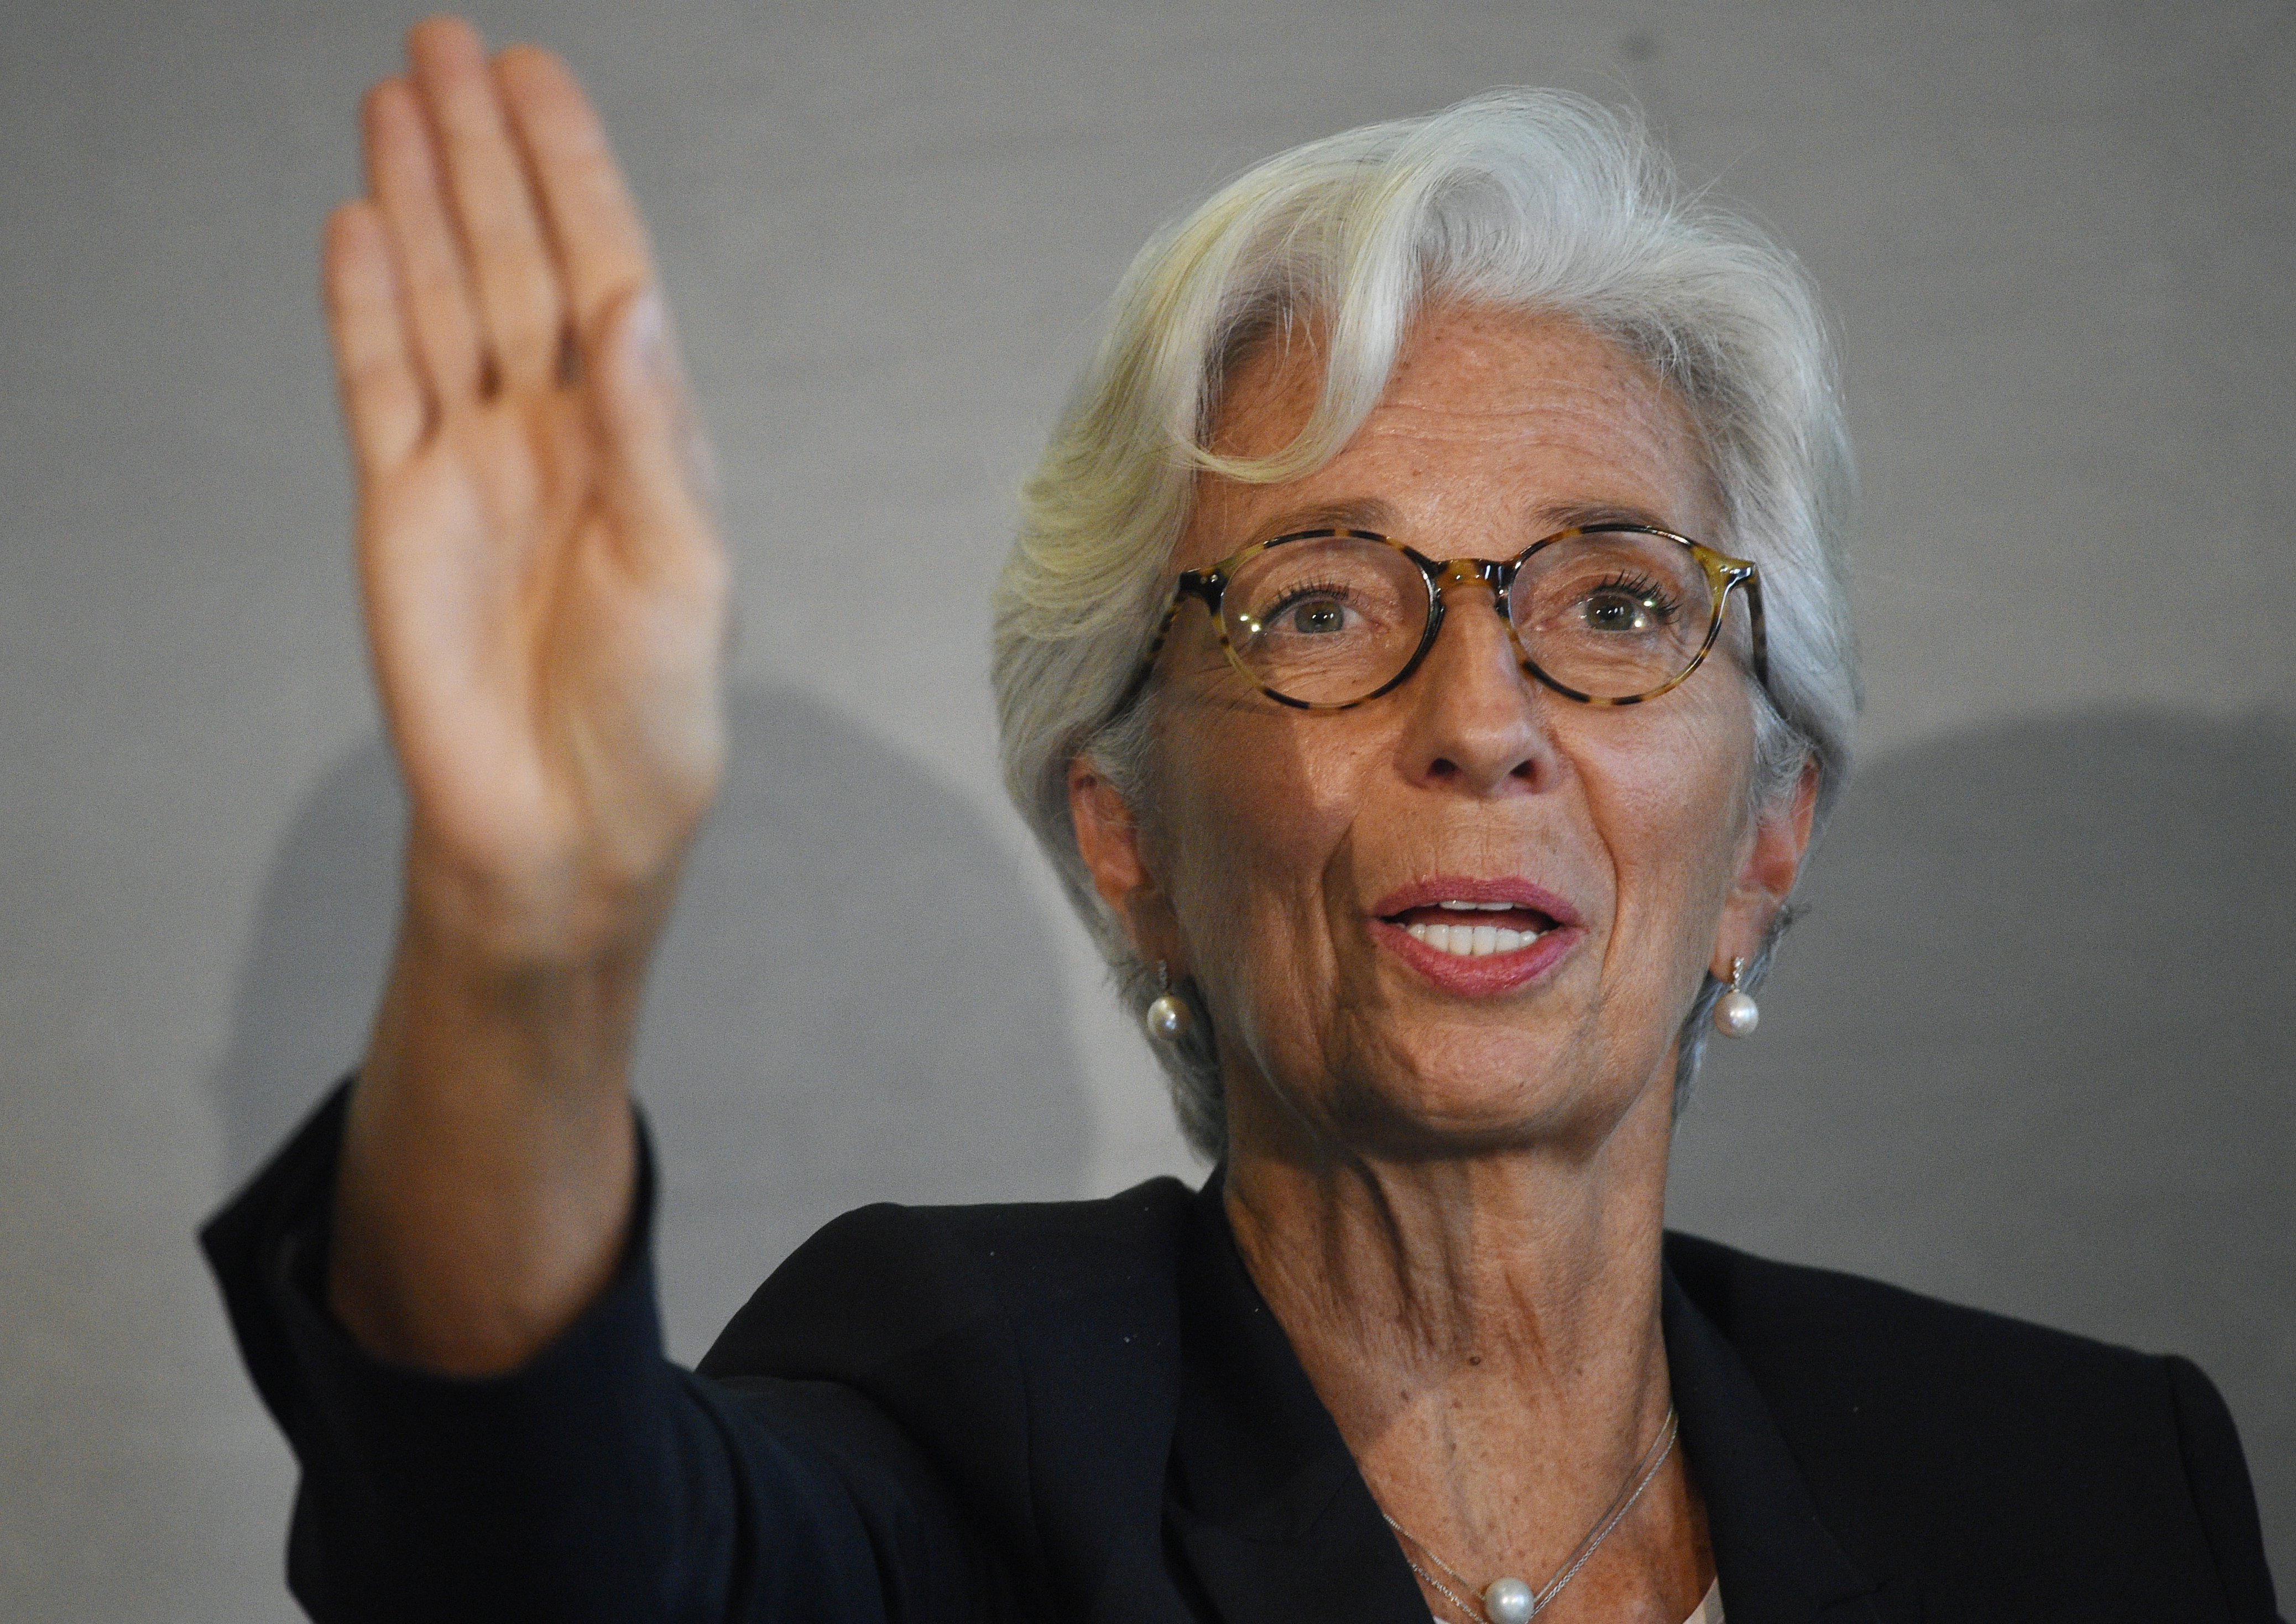 L'FMI insisteix en més reformes laborals a Espanya per reduir el dèficit